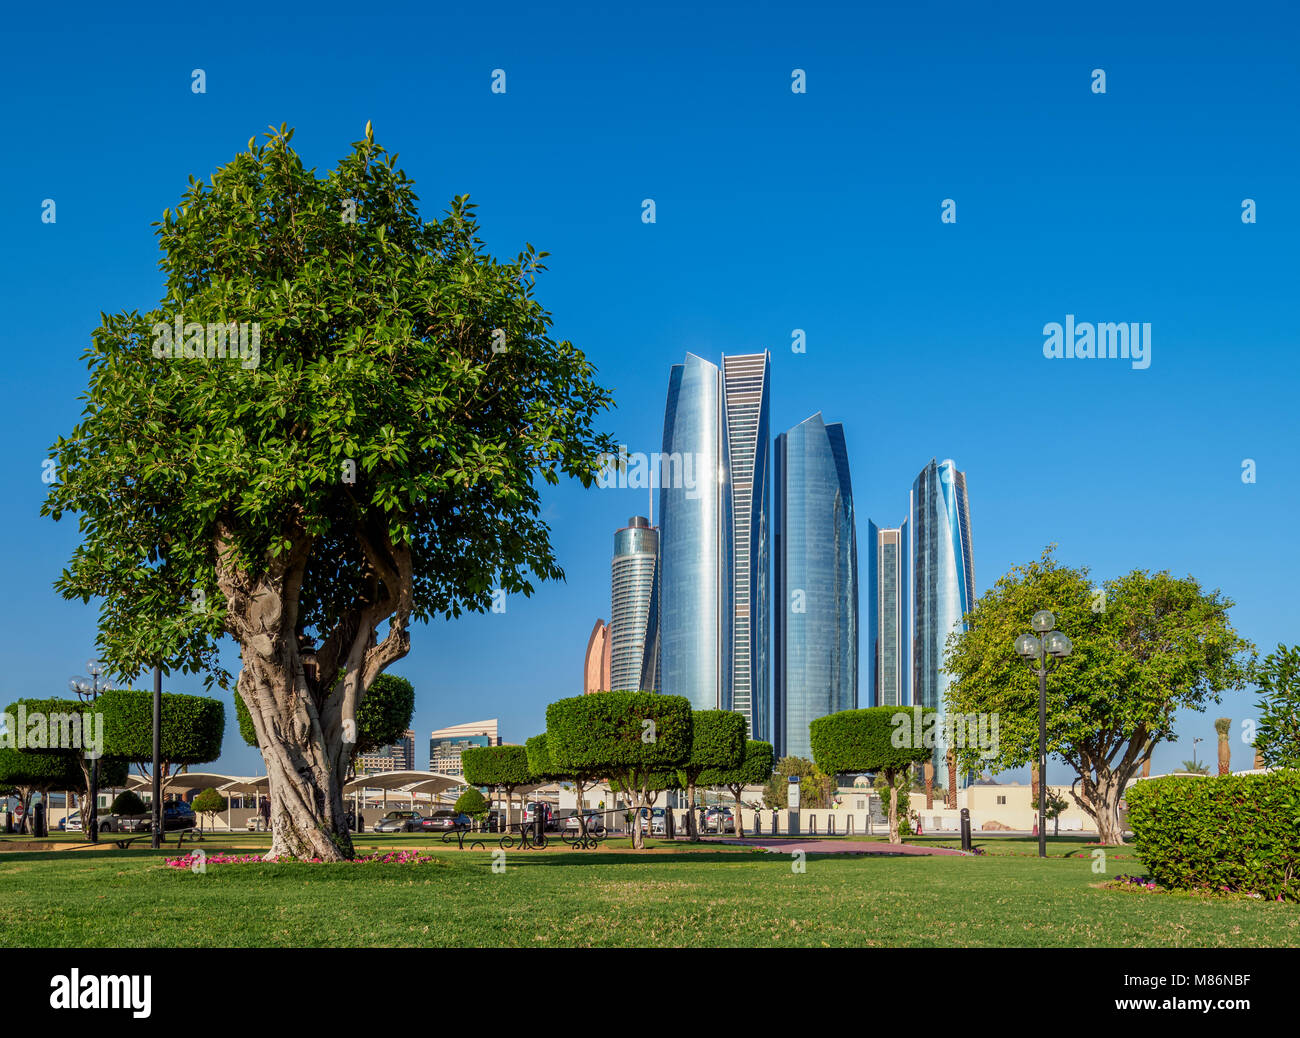 Etihad Towers, Abu Dhabi, United Arab Emirates Stock Photo